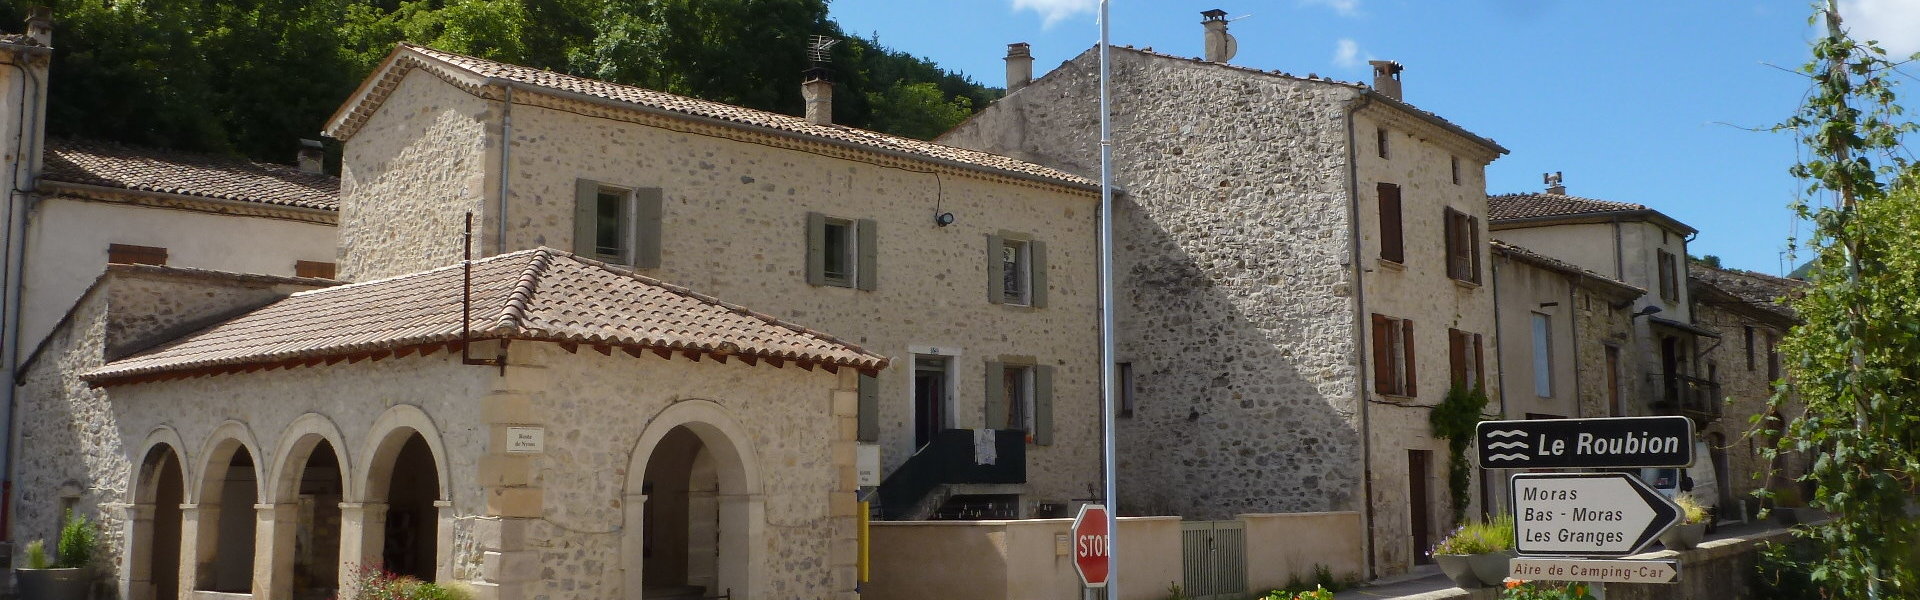 Le Conseil Municipal - Commune de Bouvières - Drôme